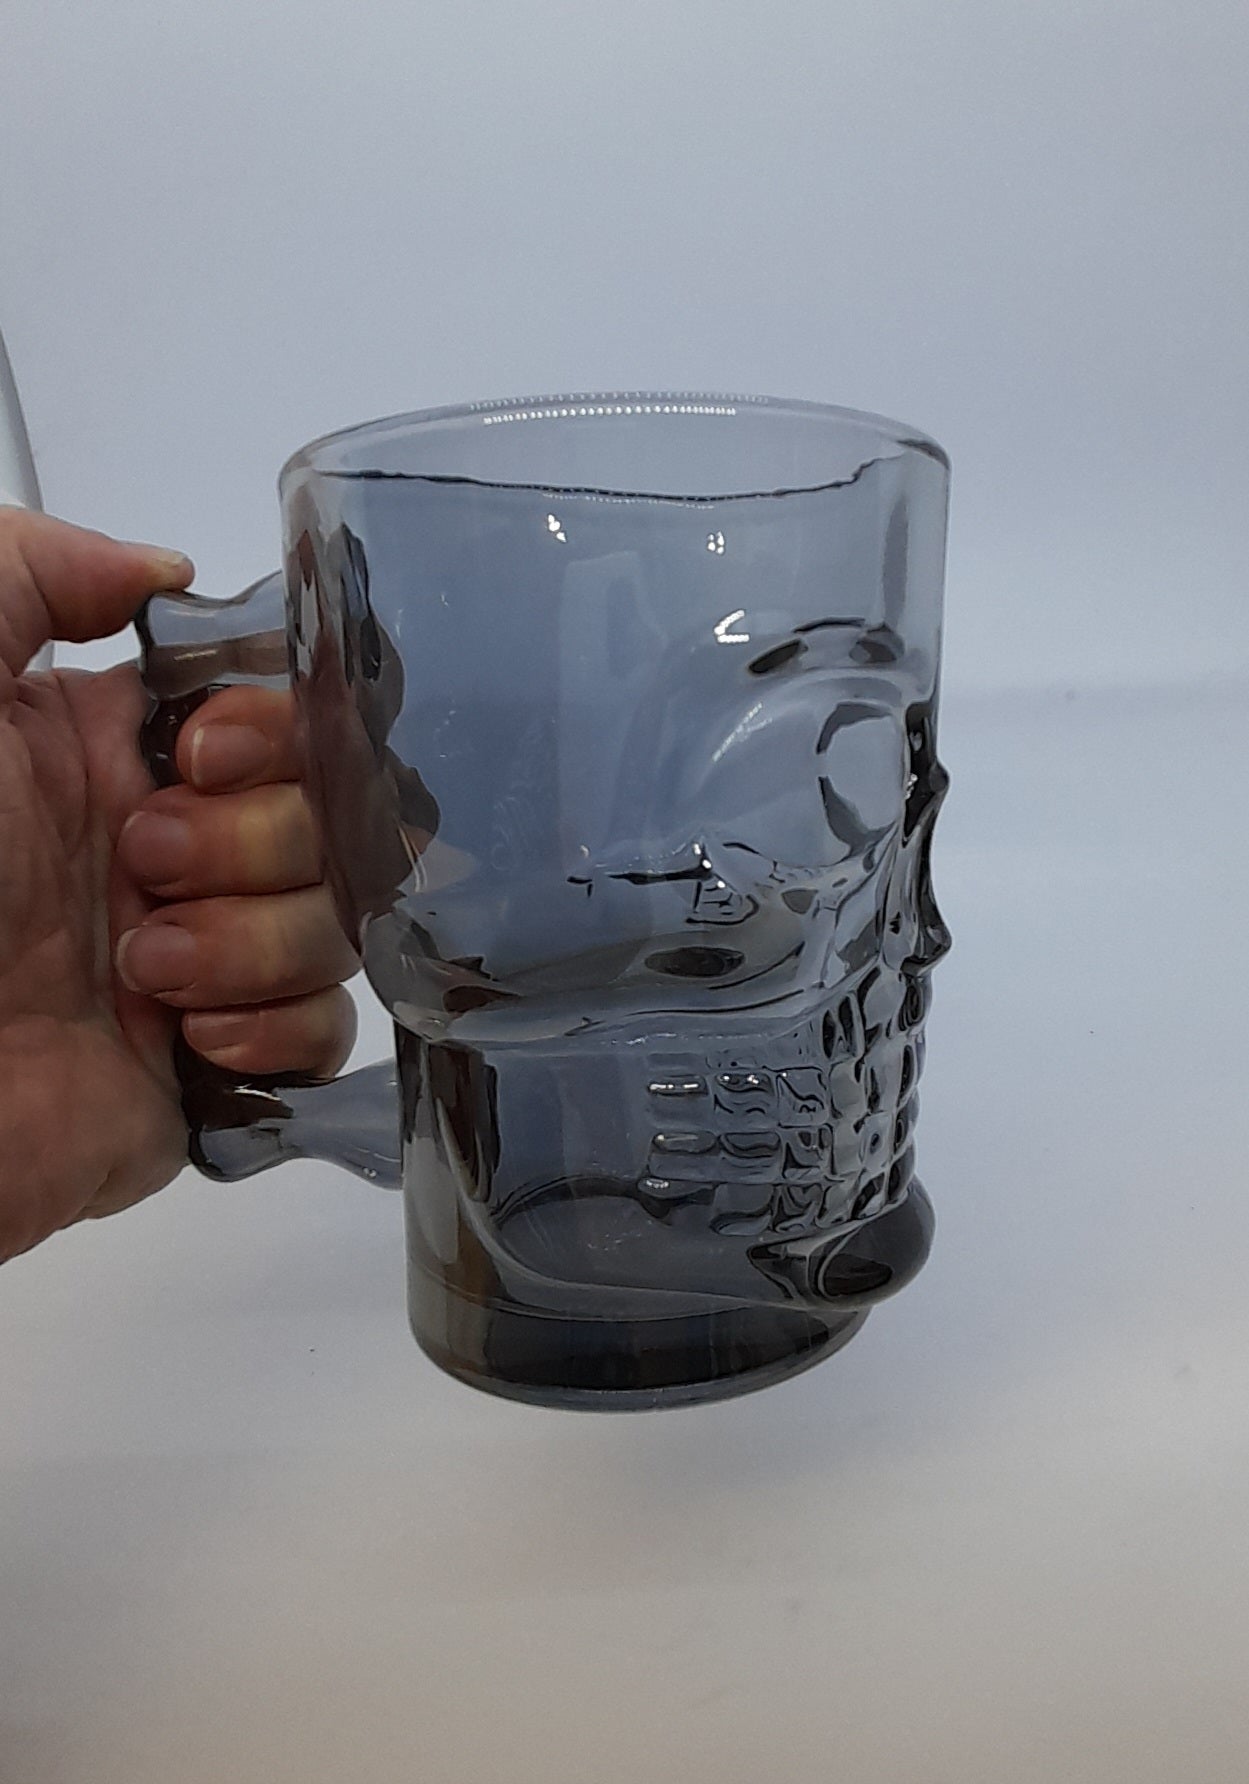 Glass - Skull Mug